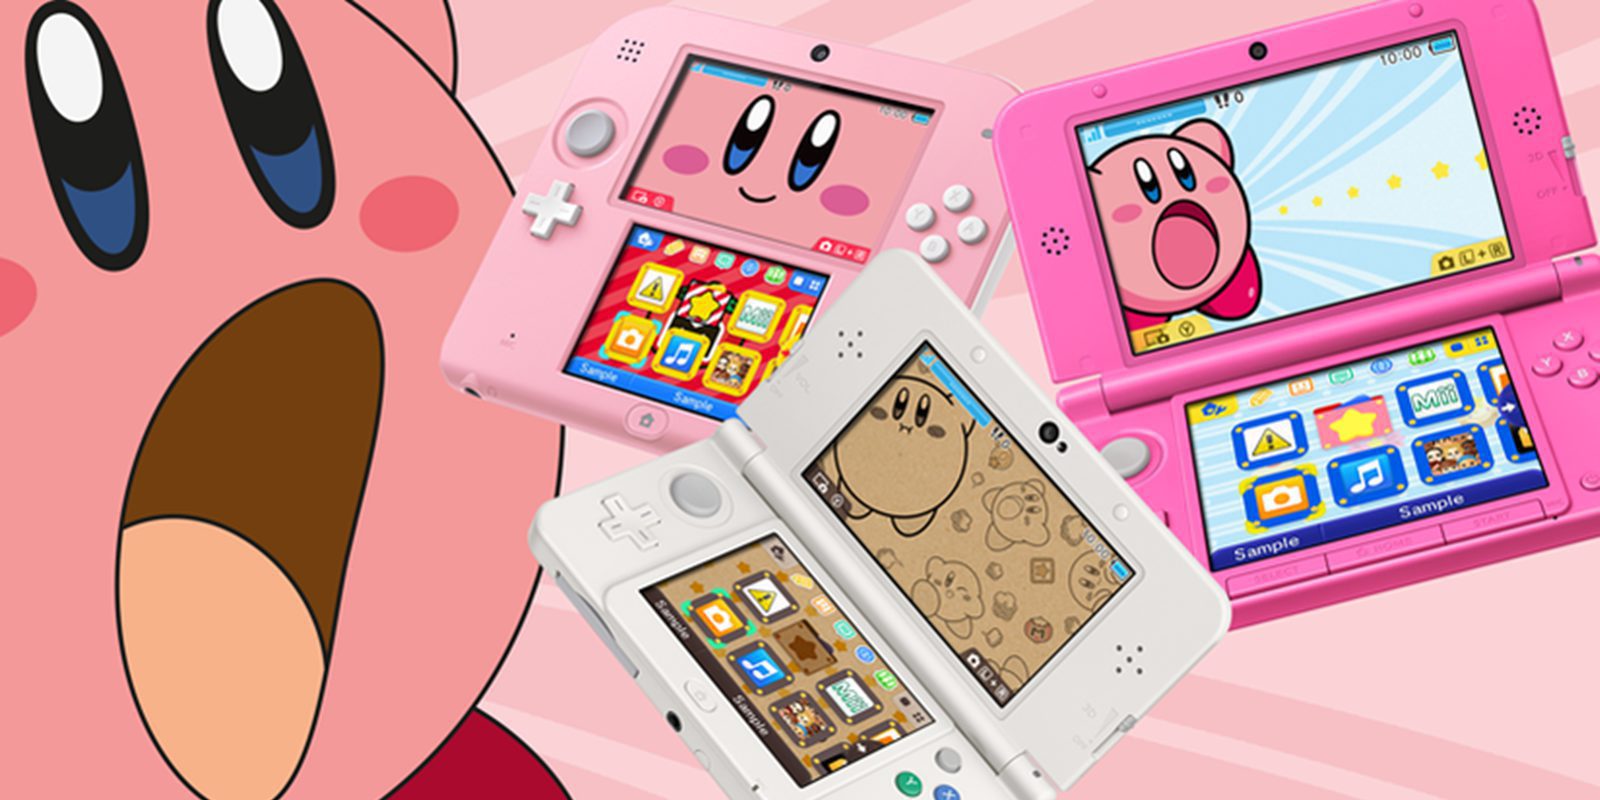 Nintendo inaugurará en Japón 'Café Kirby', una cafetería dedicada a Kirby, en agosto